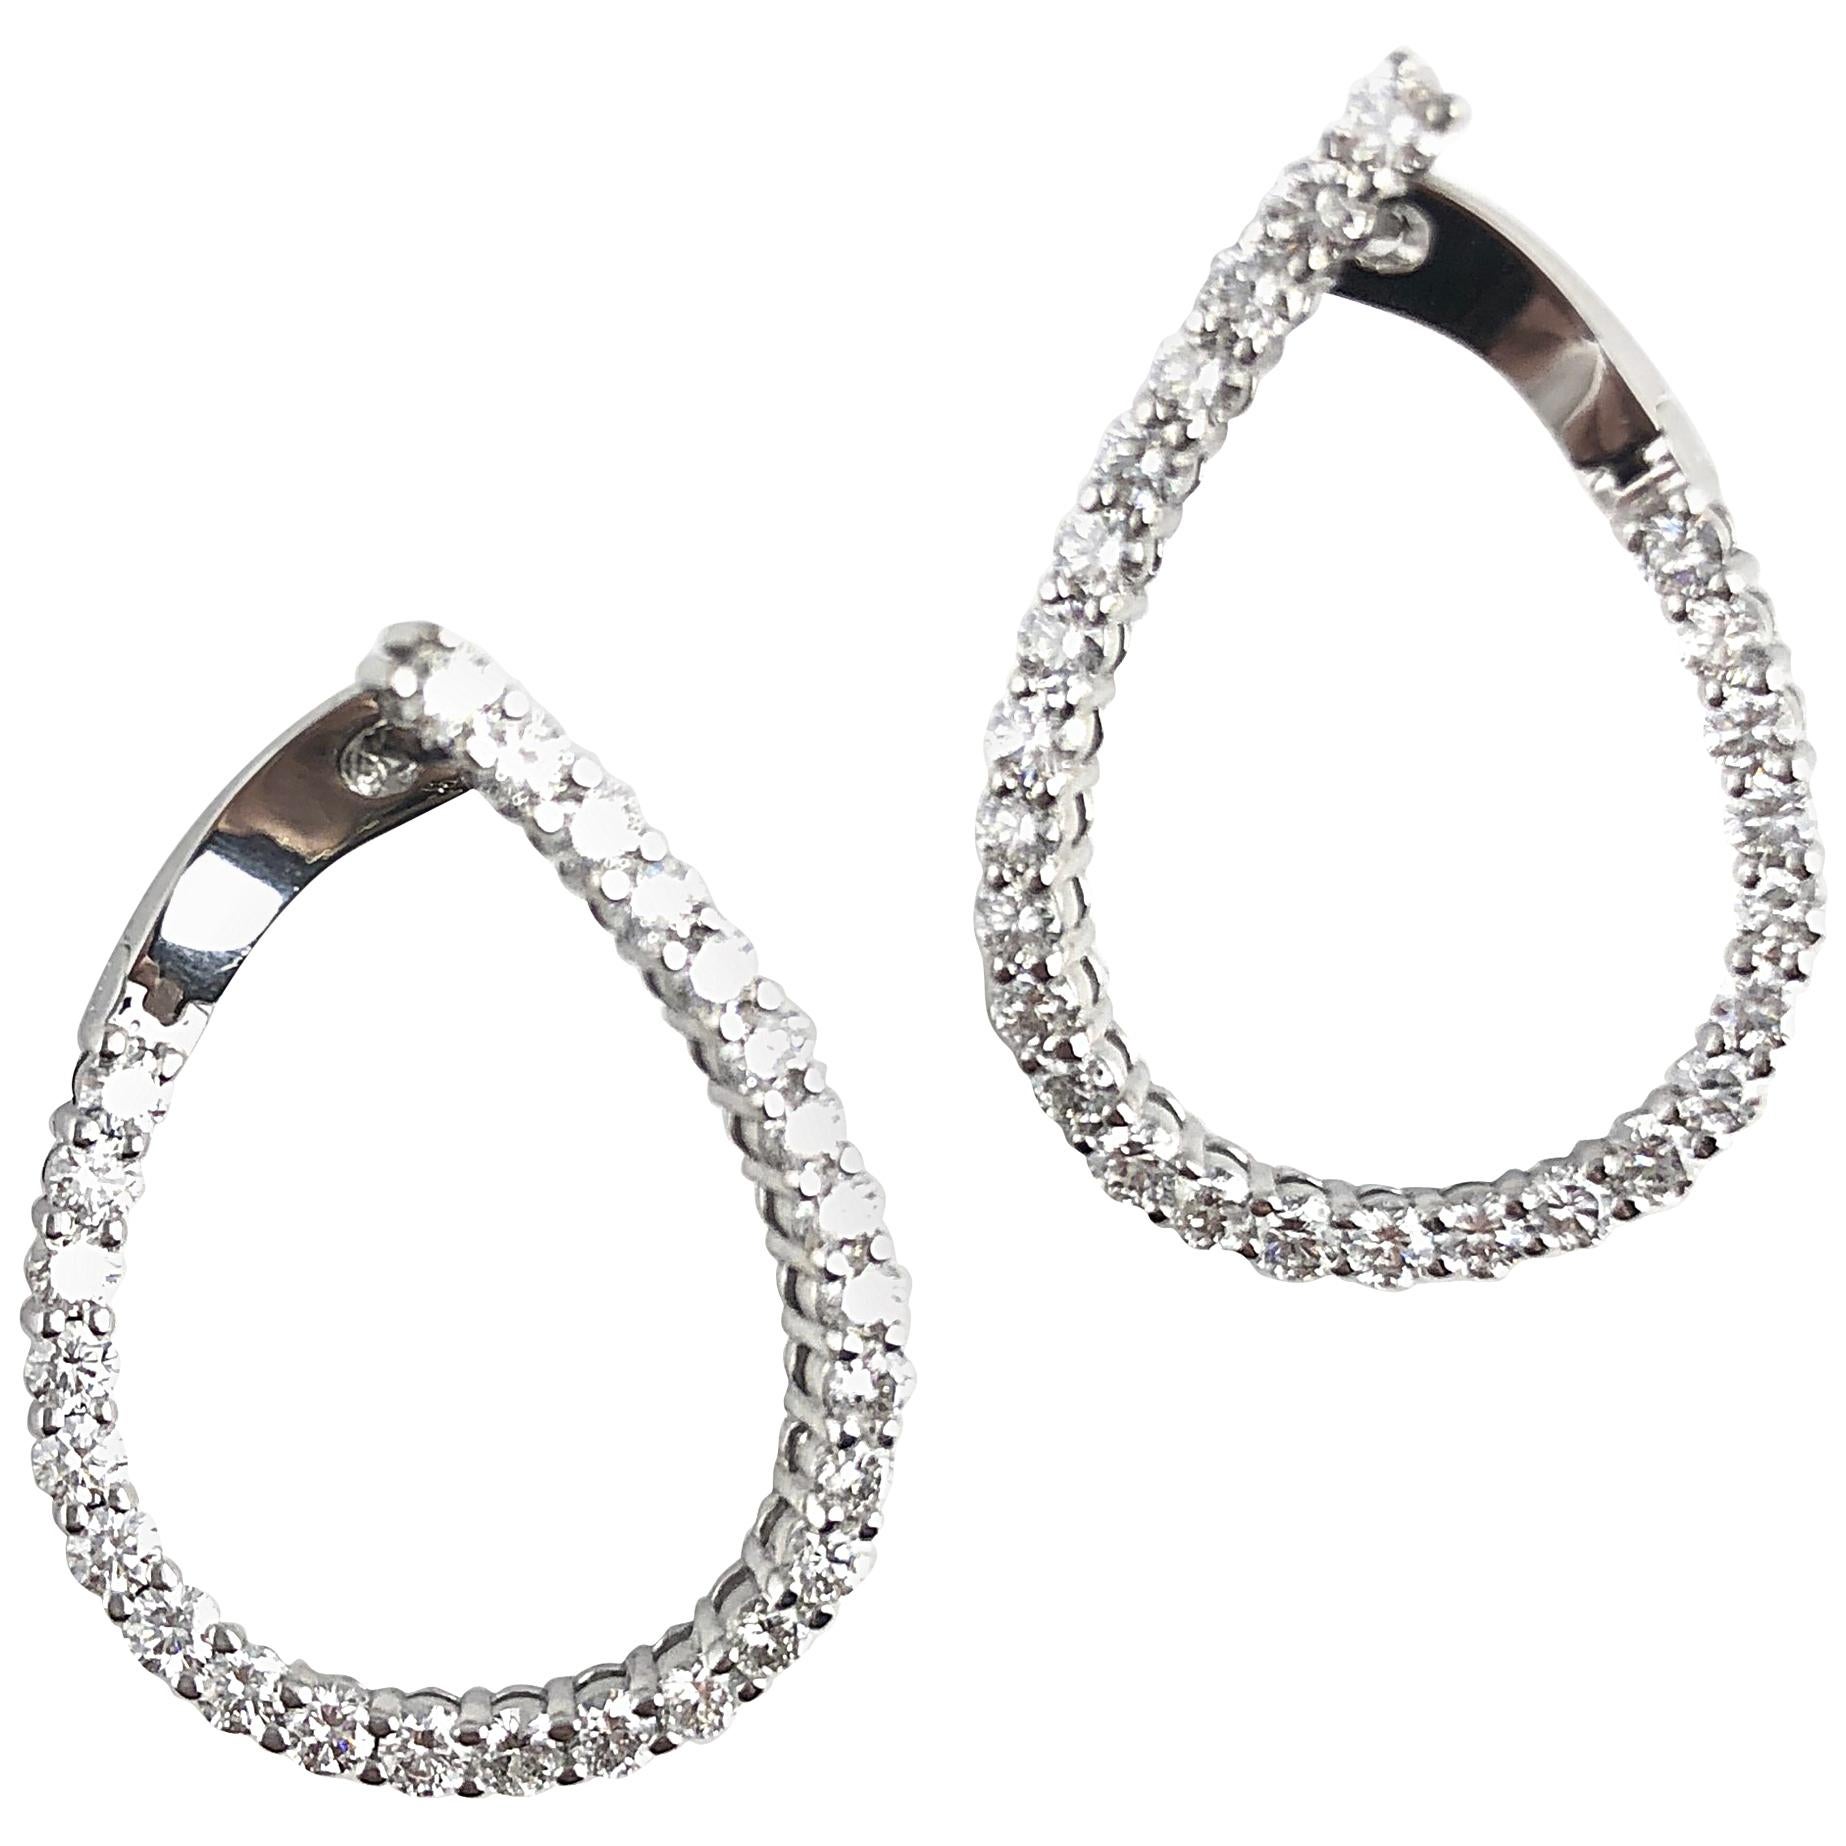 2.64 Carat Diamond Hoop Swirl Earrings in 14 Karat White Gold